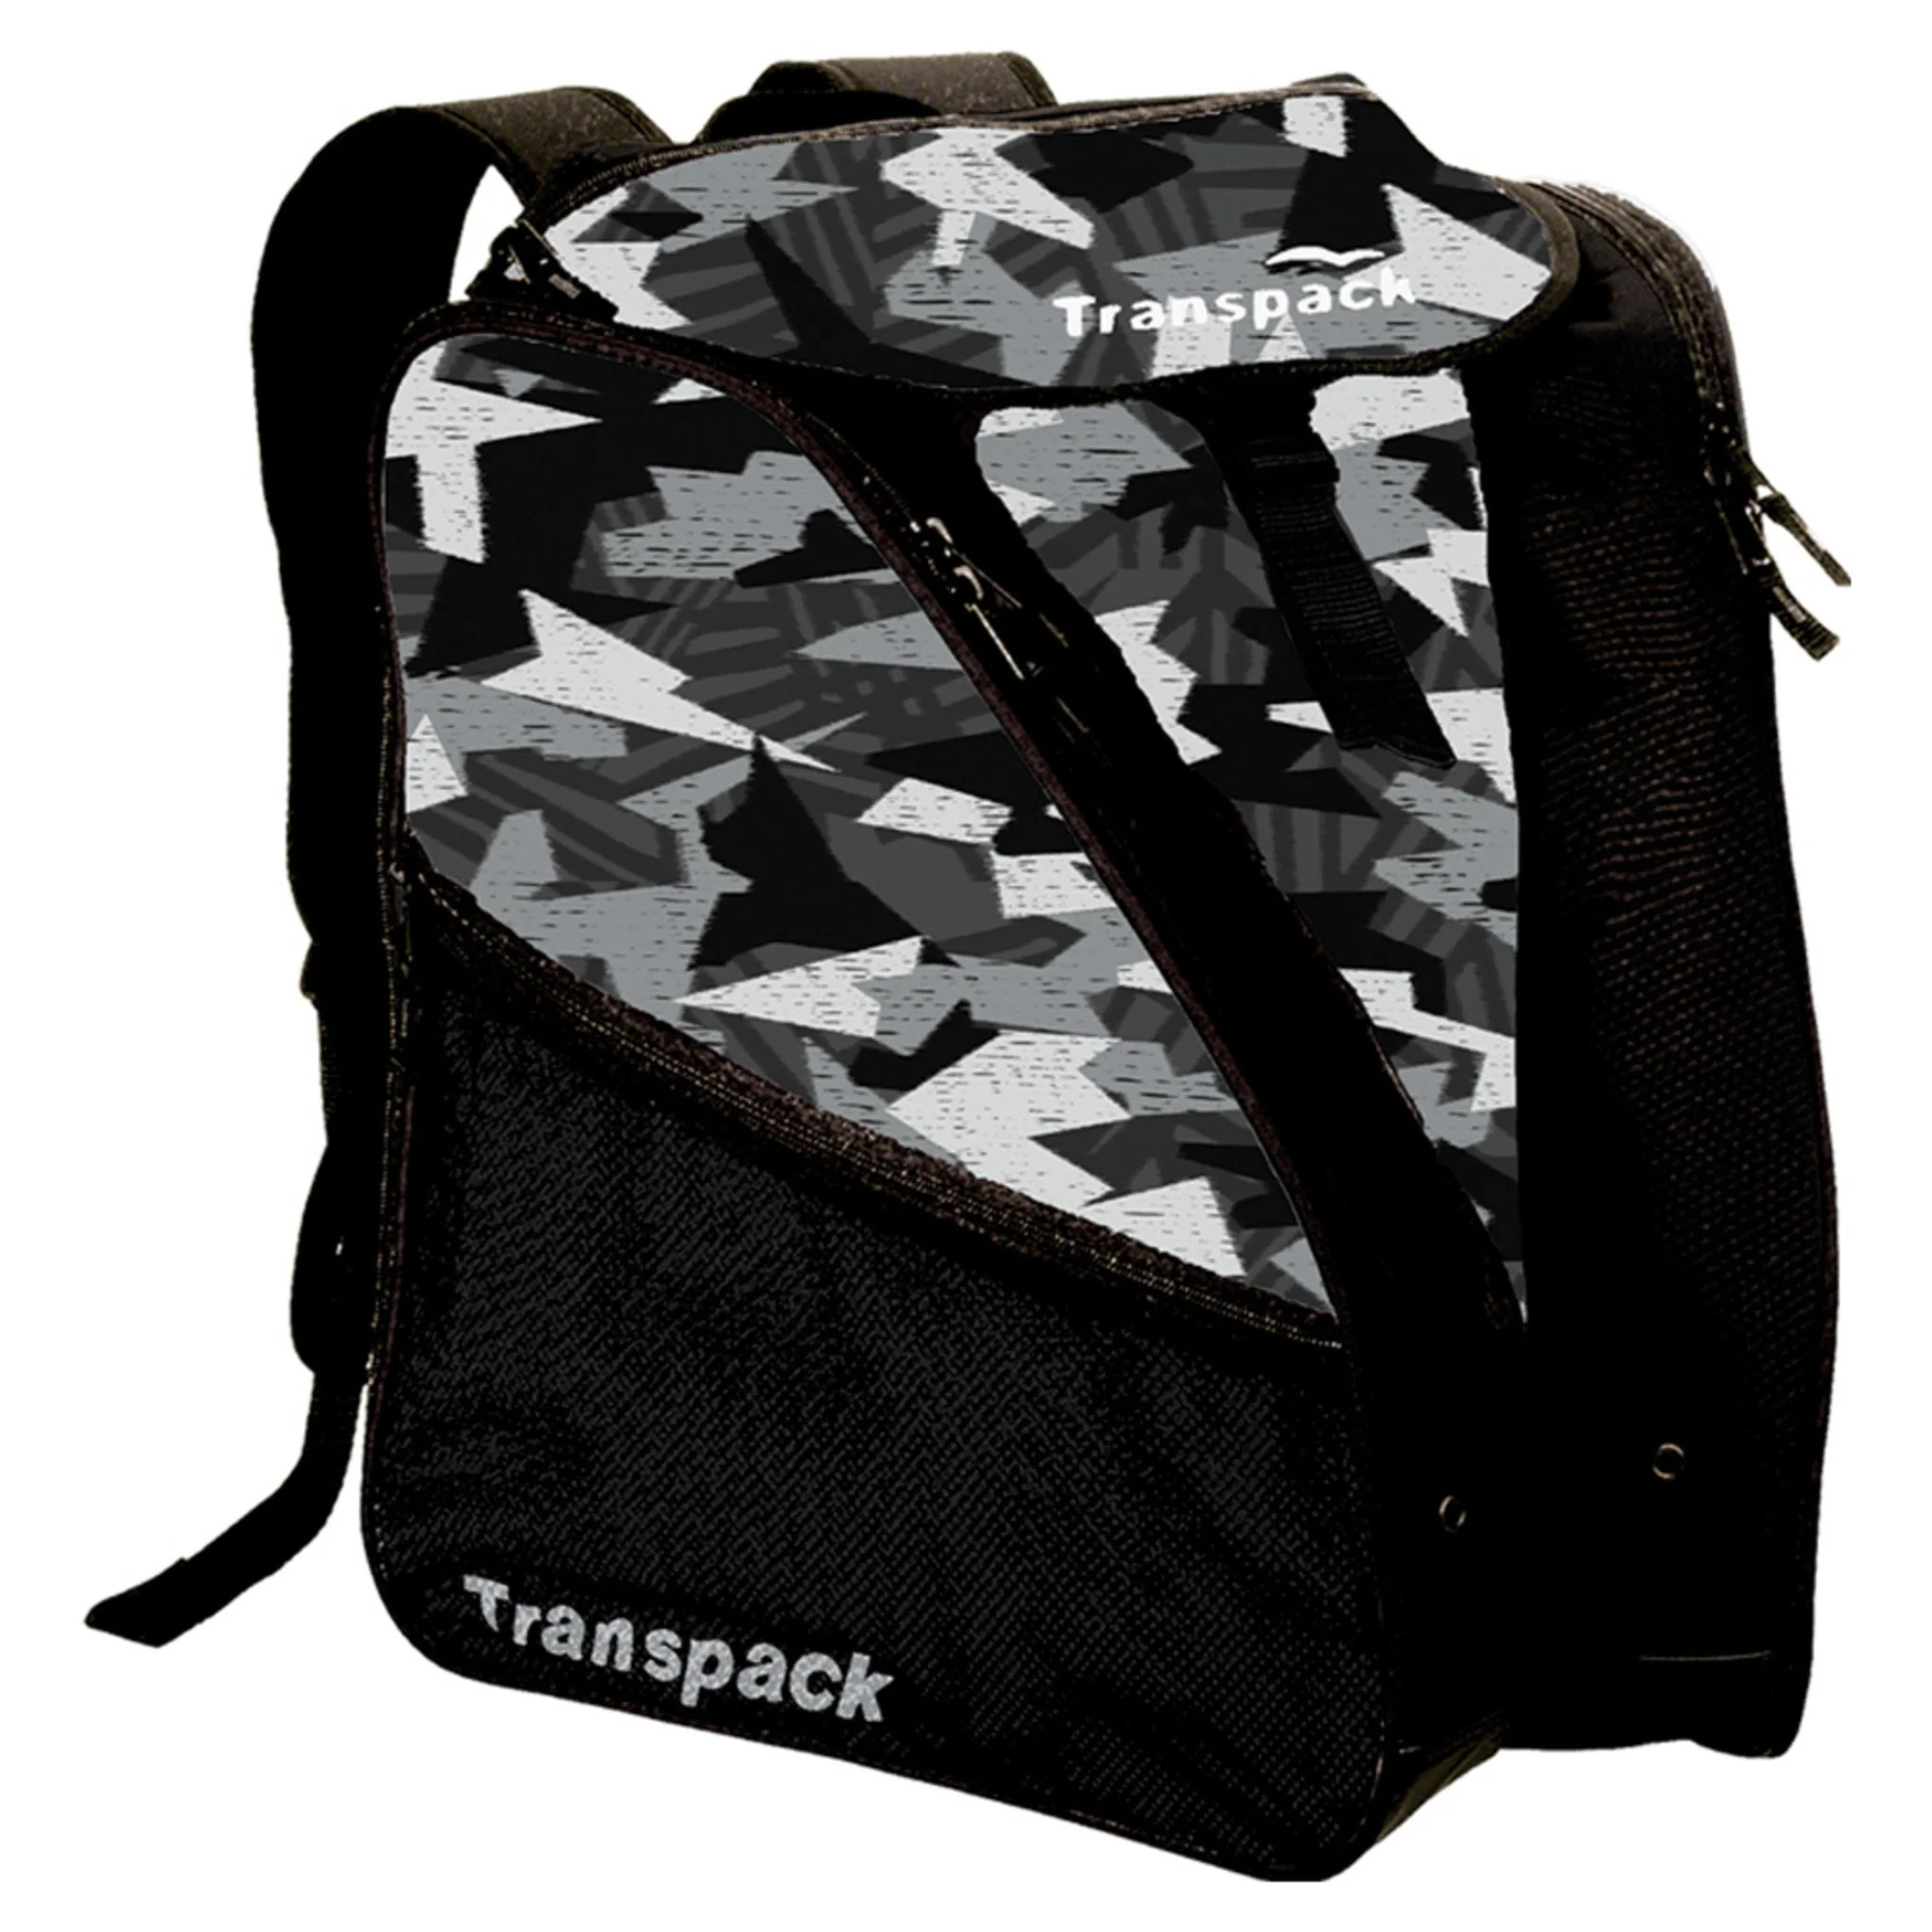 Transpack Edge Boot Bag-Black - image 3 of 8